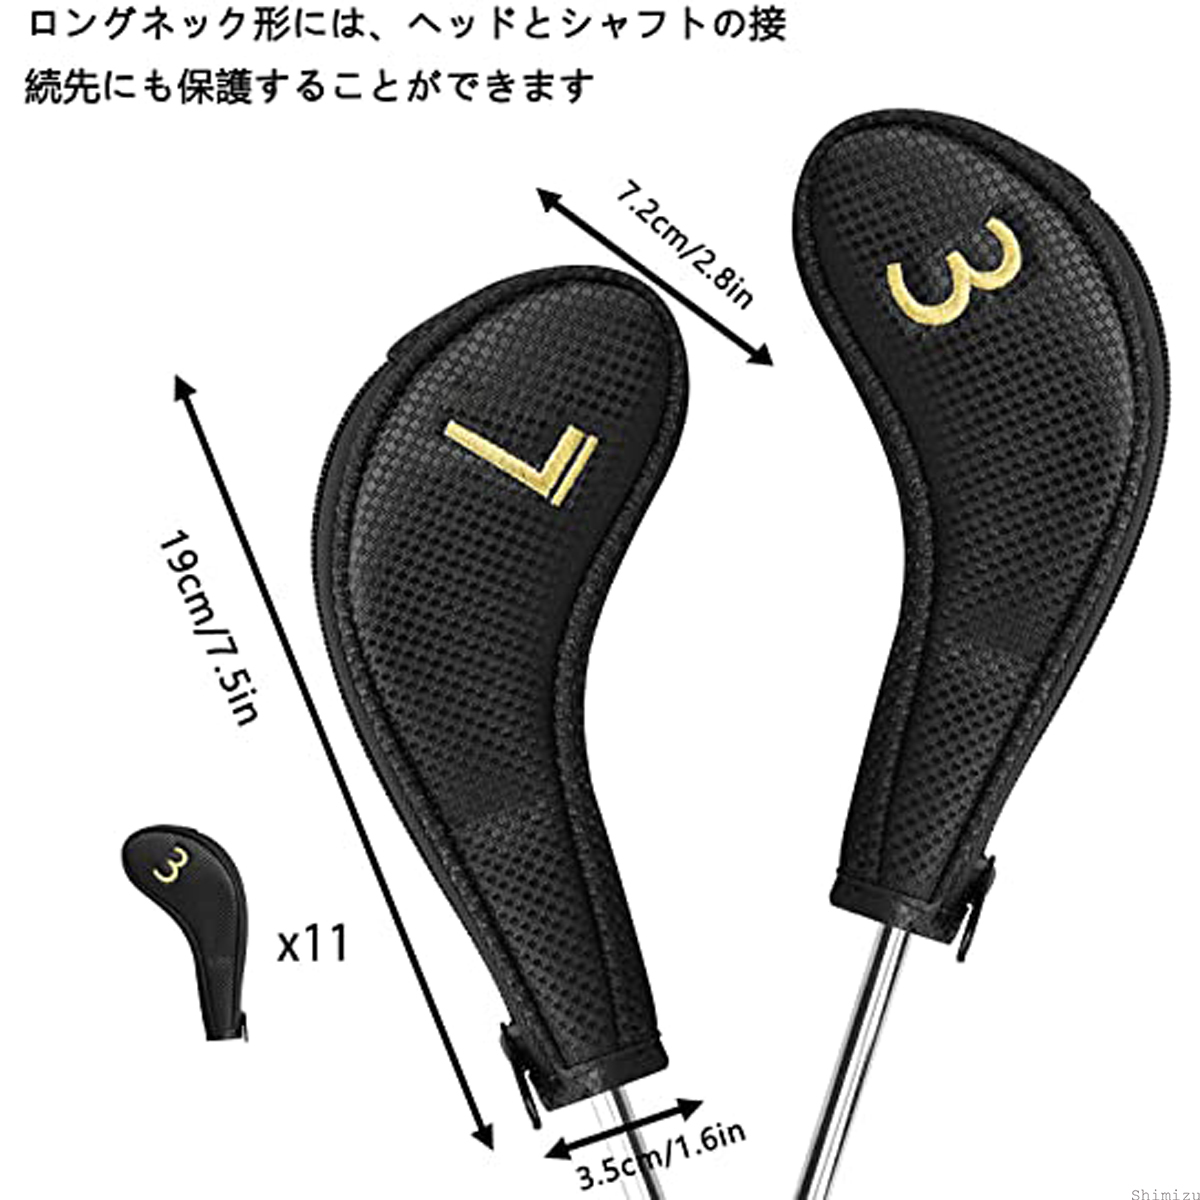 シンプル☆ ロングネック アイアン用 ウェッジ ヘッドカバー ファスナー付き 左右 両面番号 ブラック デザイン ゴルフ ギフト 用品